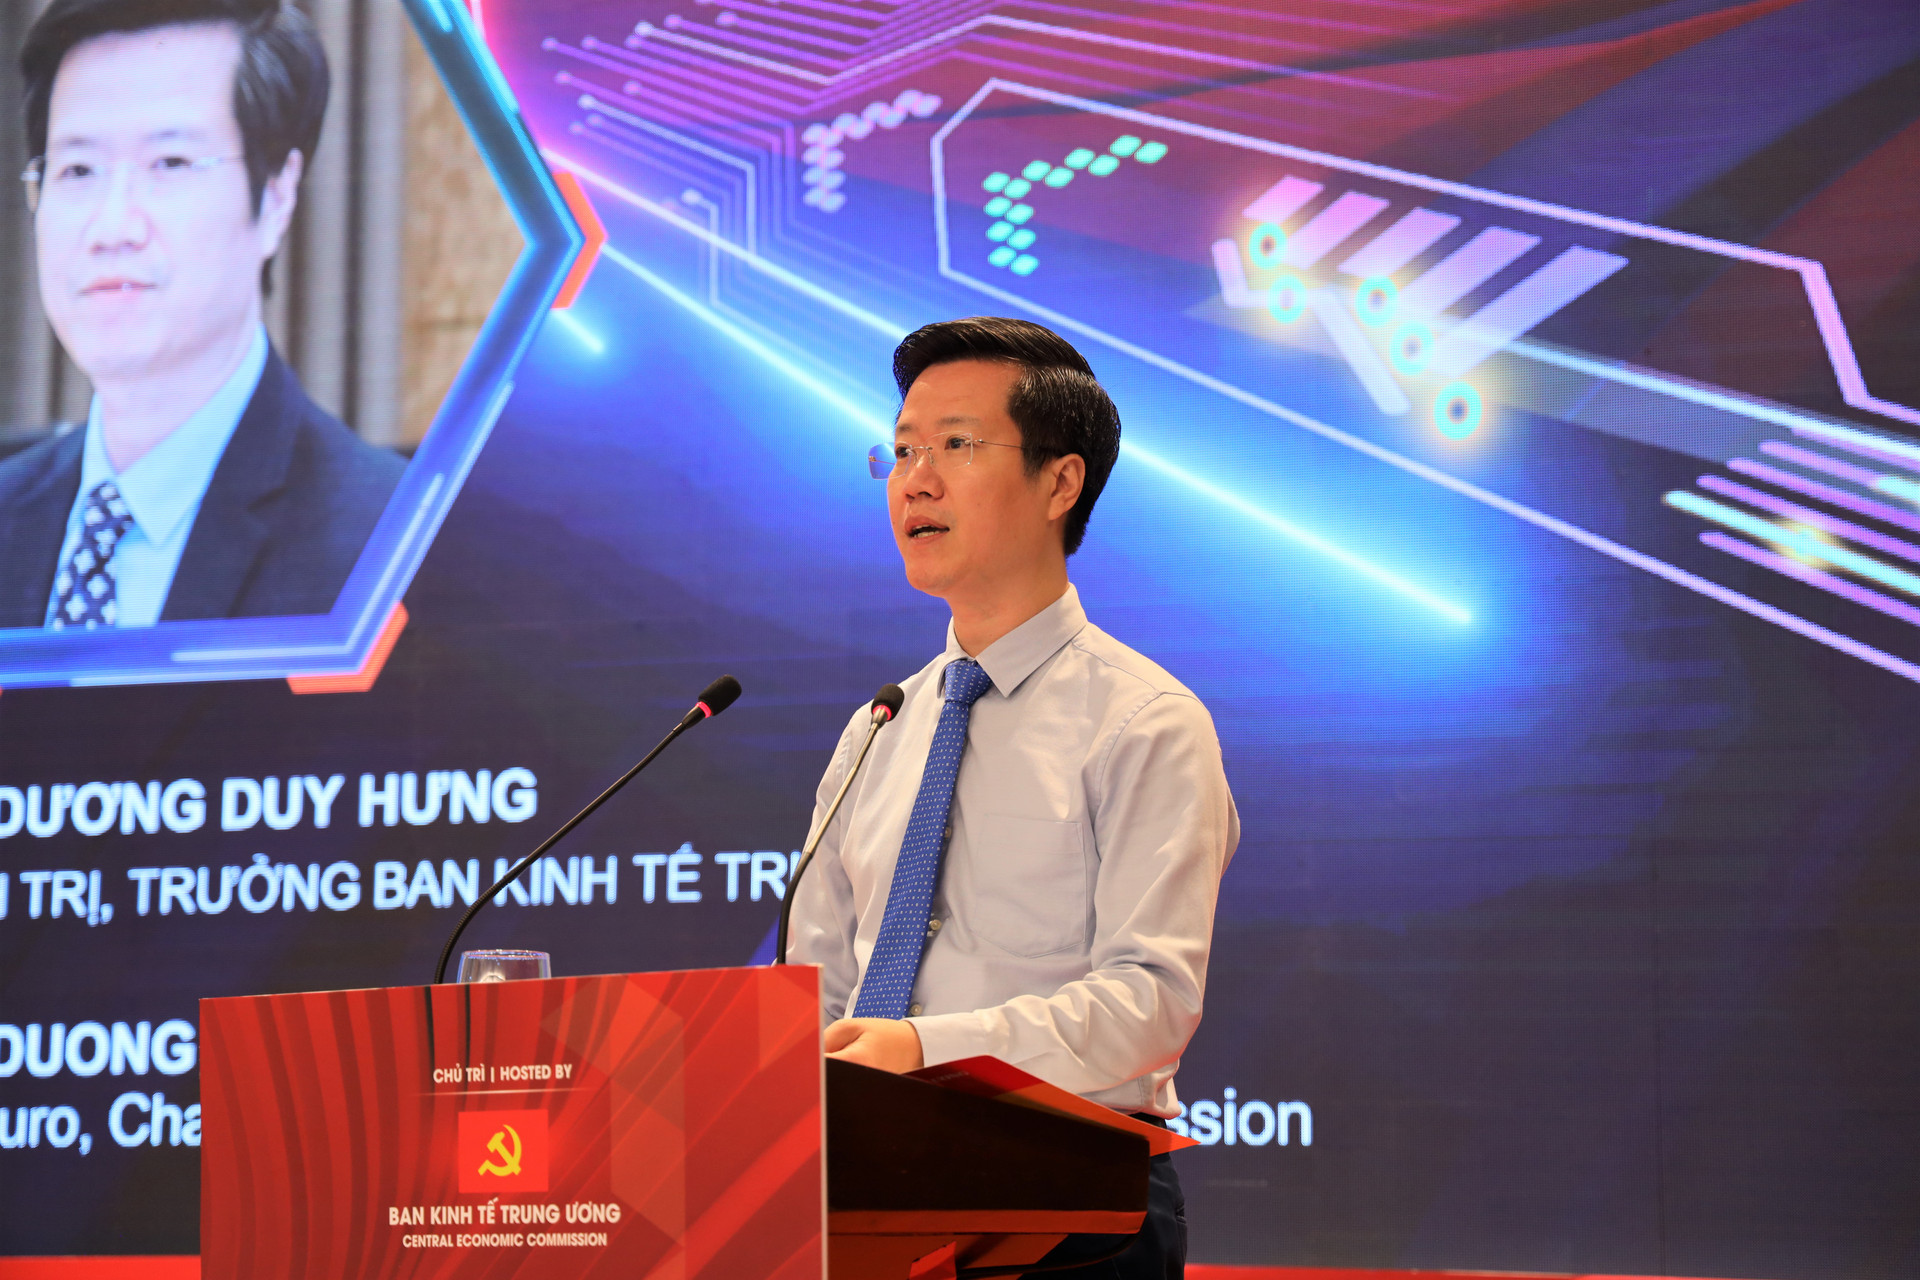 TS. Dương Duy Hưng, Việt Nam đã đạt được nhiều kết quả tích cực trên phương diện tiếp cận, phát triển cùa AI